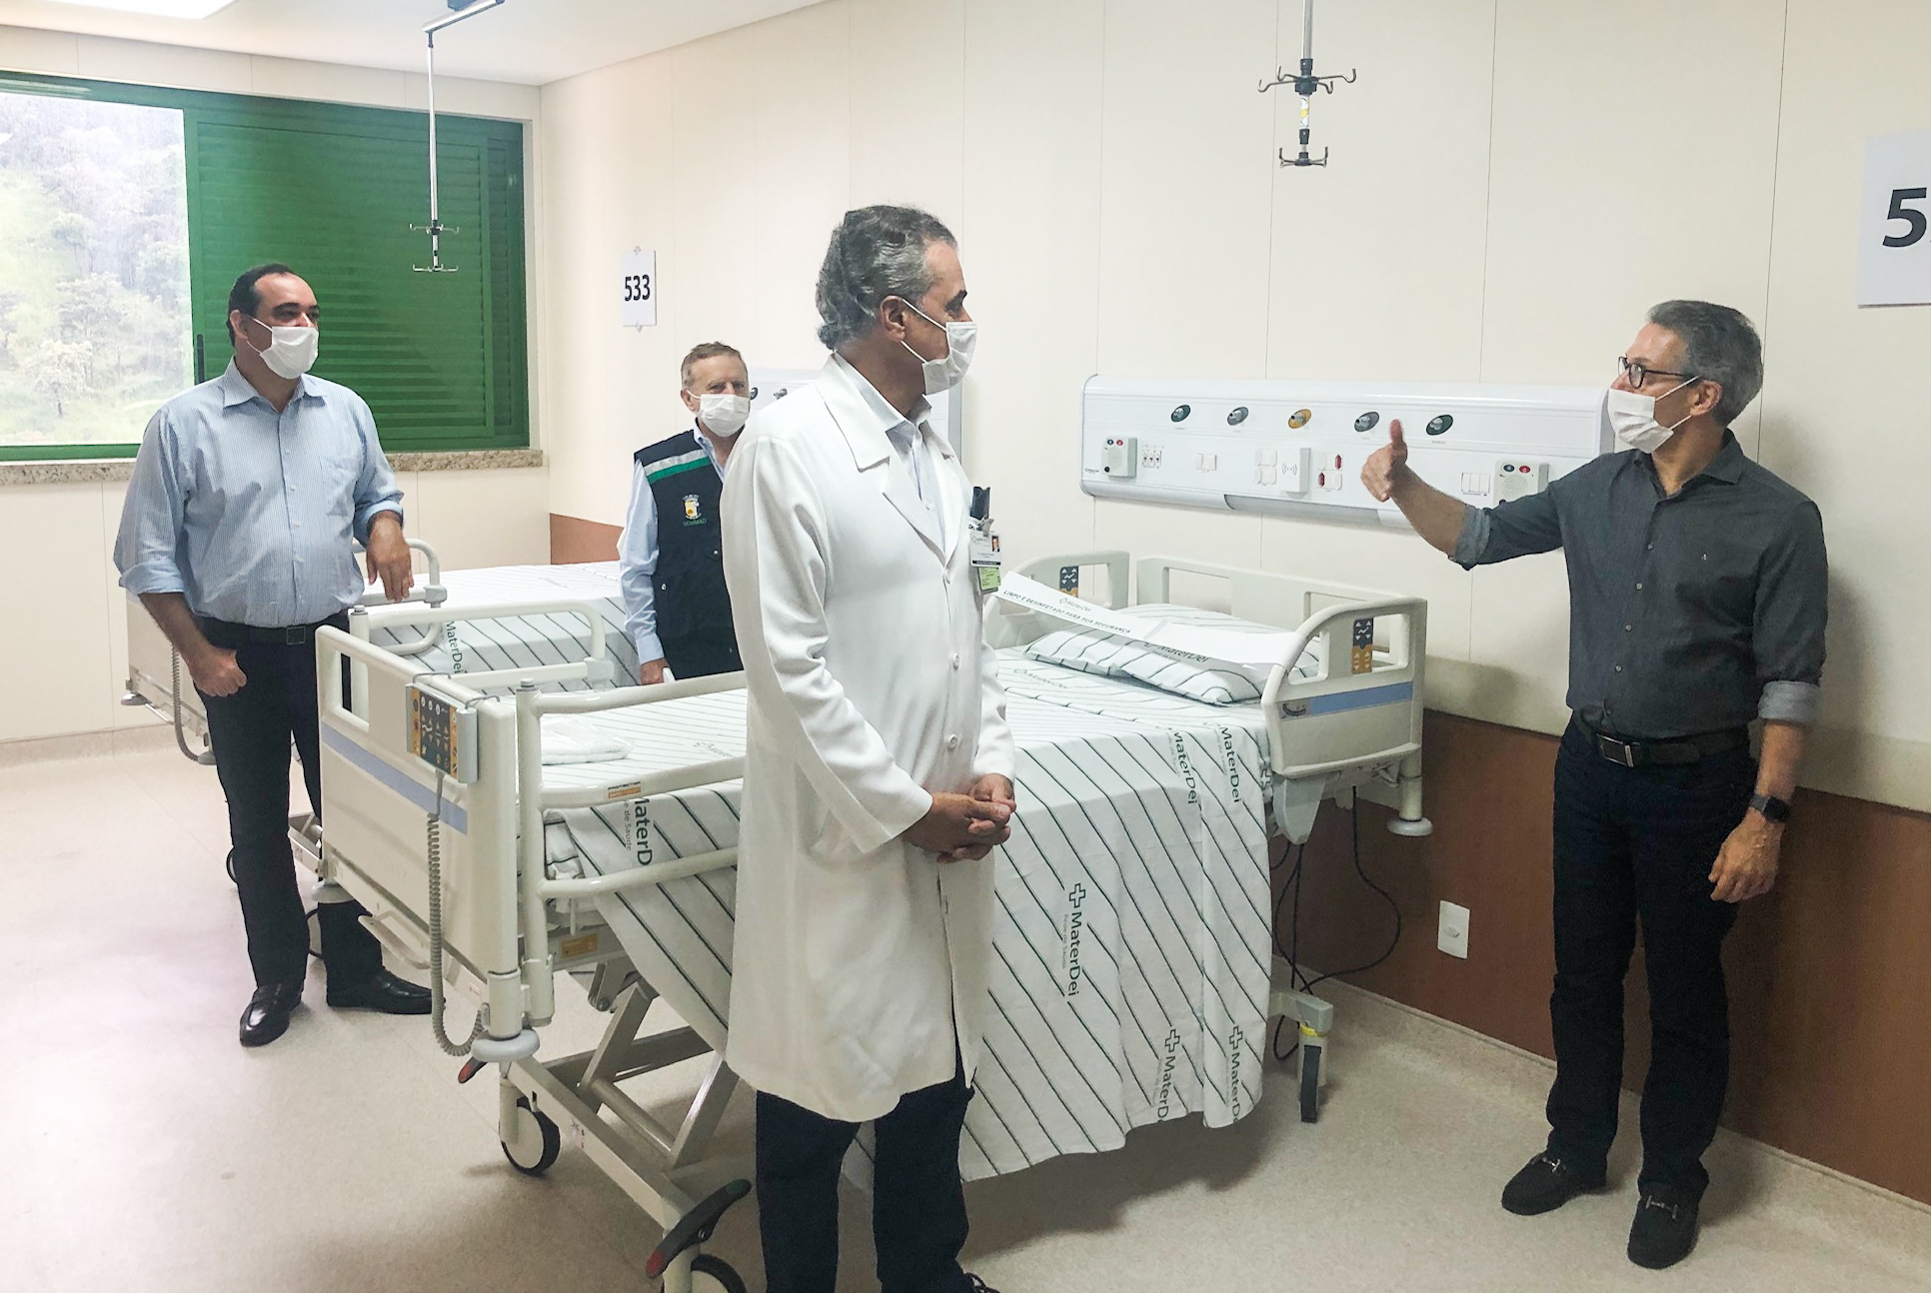 zema parceria hospitais privados